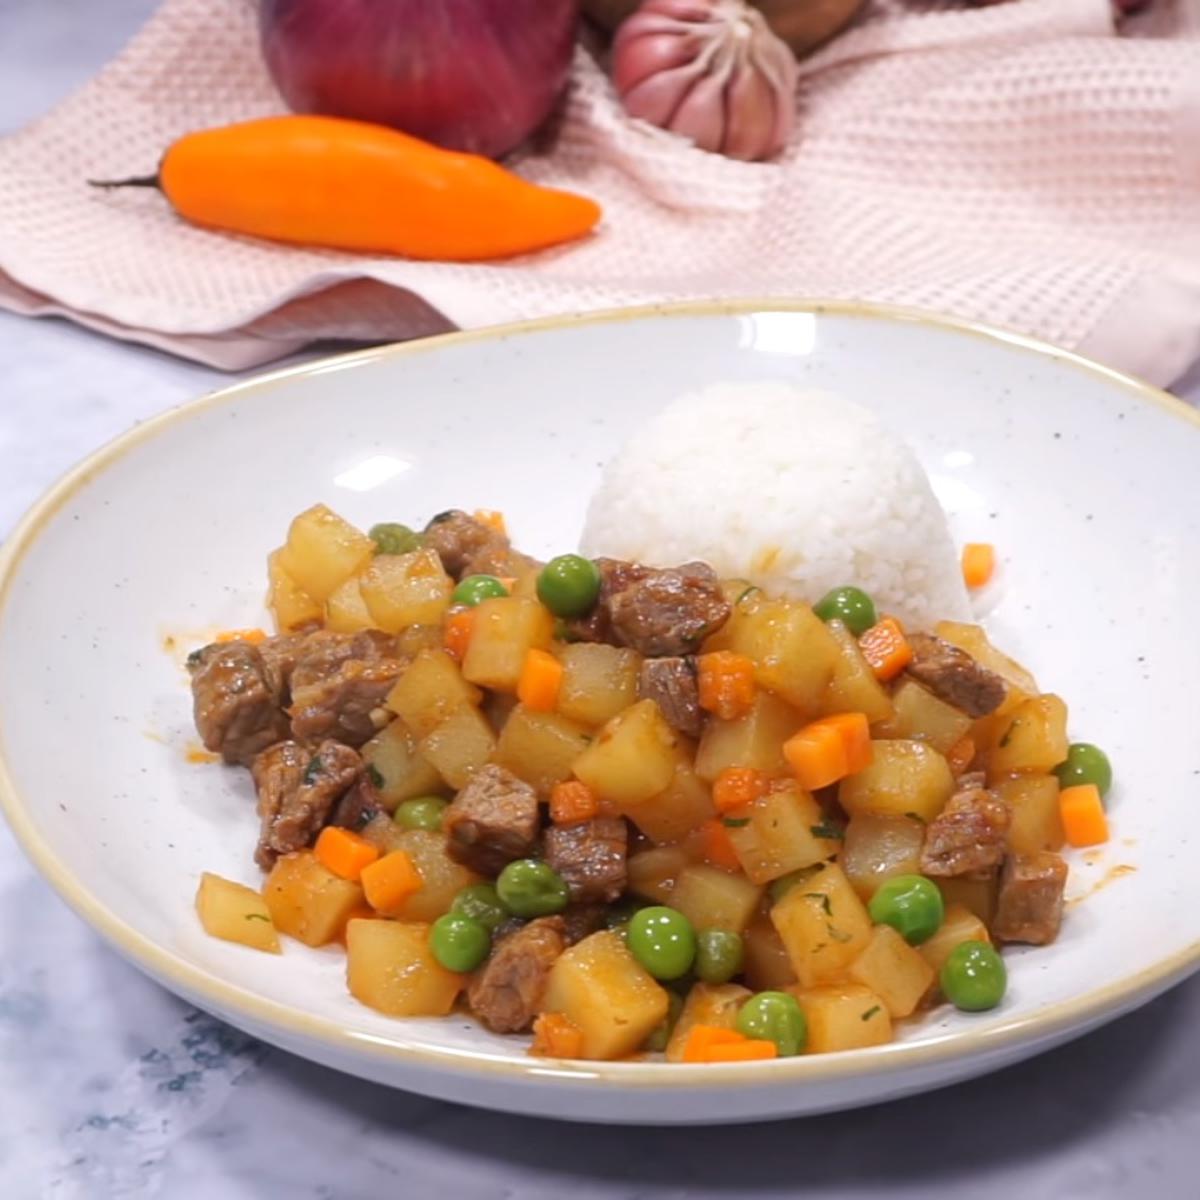 Picante de carne, el guiso casero perfecto para tu almuerzo | GASTRONOMIA |  PERU21